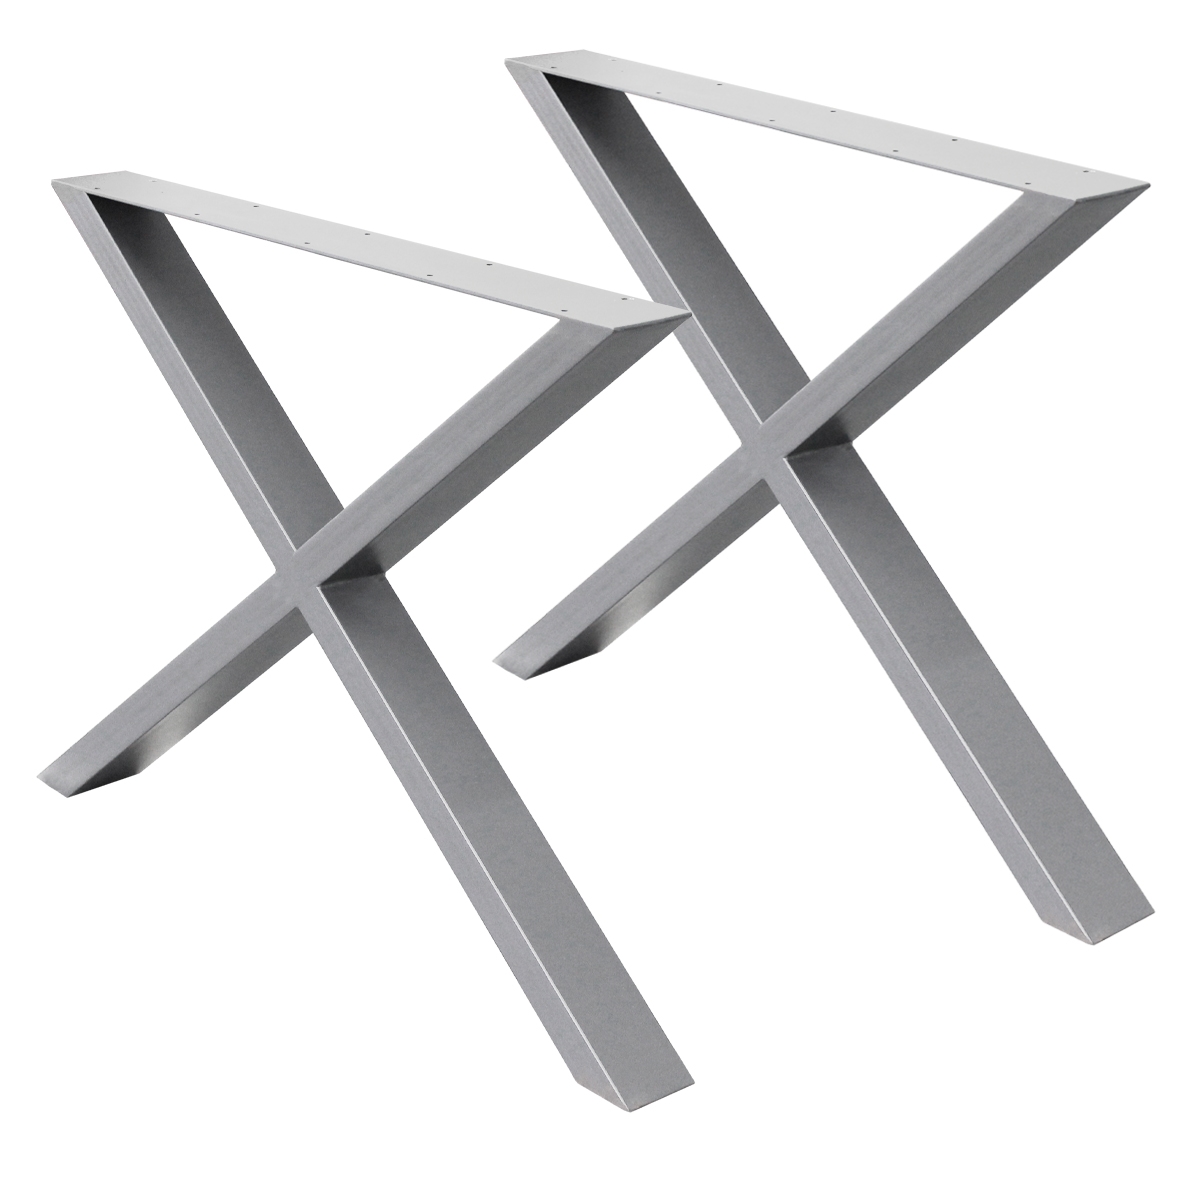 2x Conjunto de patas mesa diseño industrial acero bricolaje bancada/cocina/tabla 